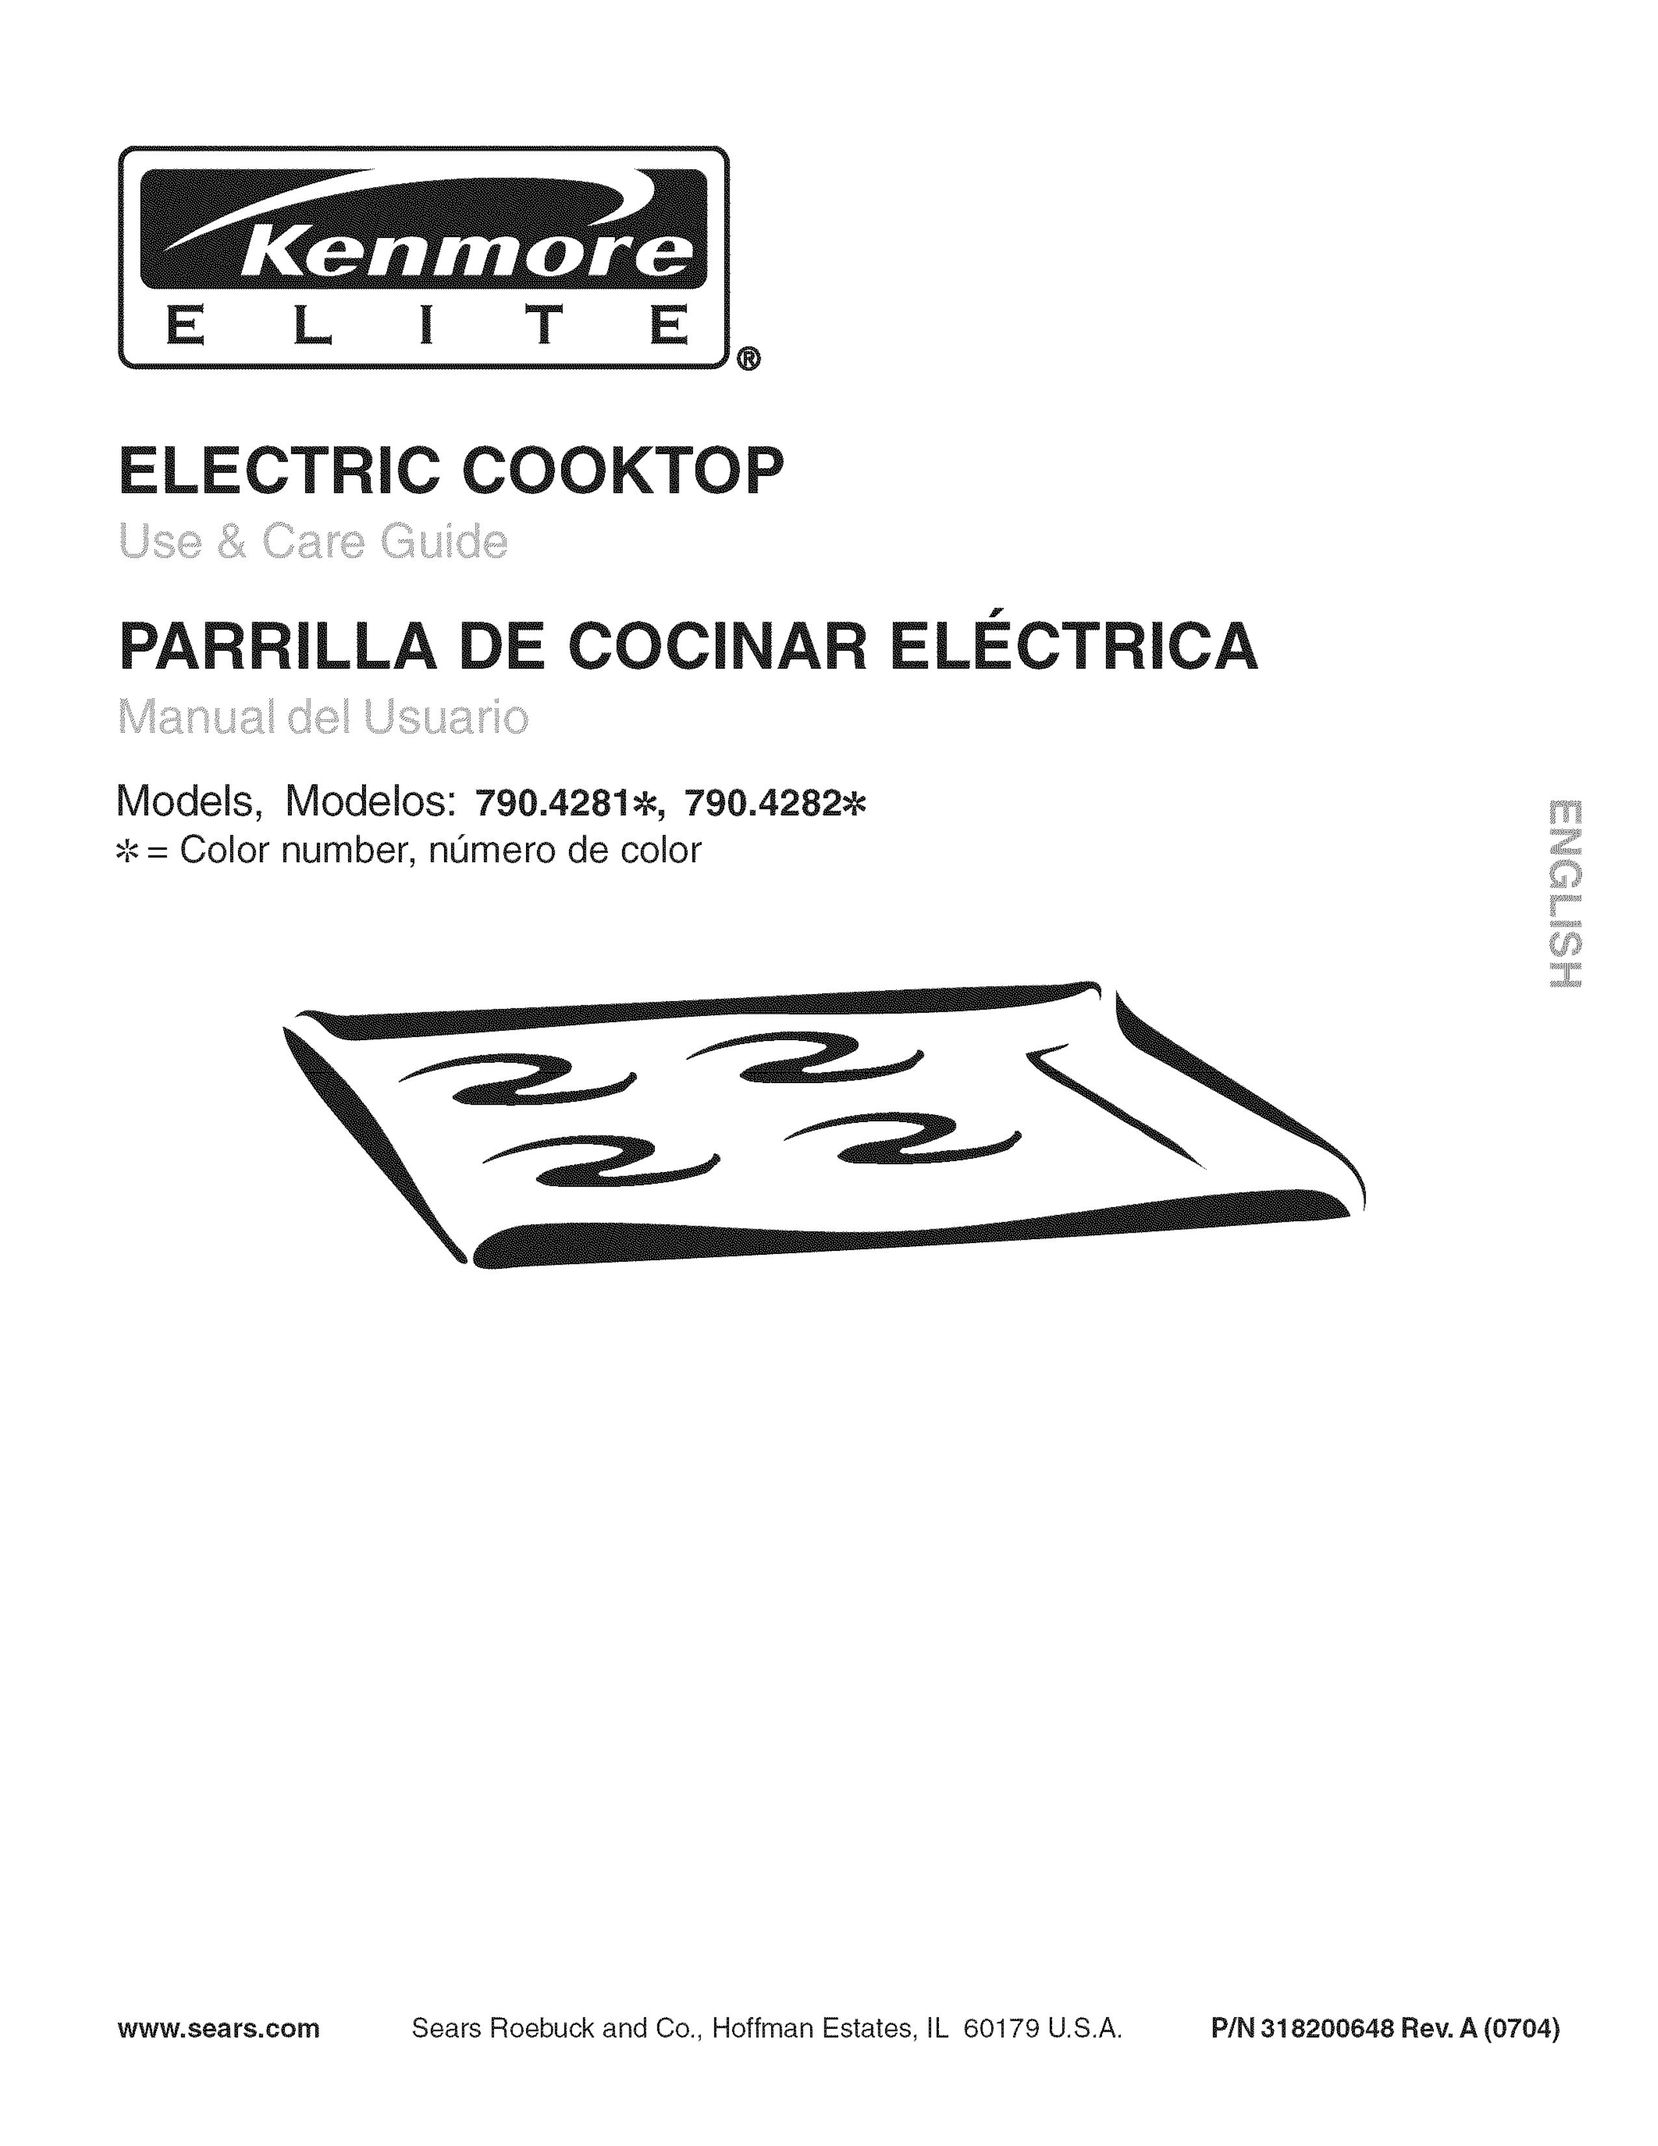 Kenmore 790.4282 Cooktop User Manual